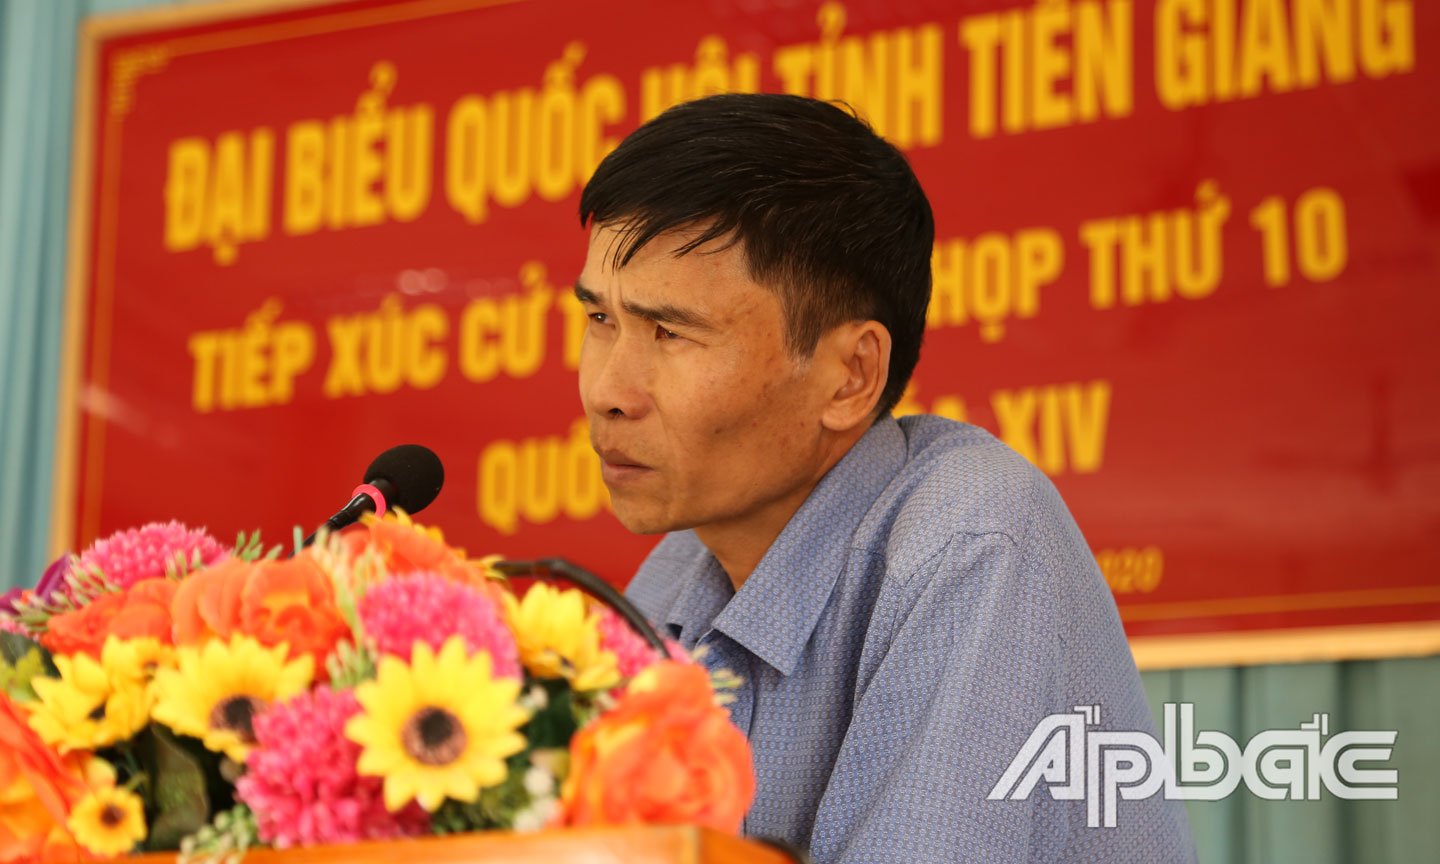 Phó Giám đốc Điện lực huyện Tân Phước Lê Văn Mót thông tin thêm cho người dân được rõ